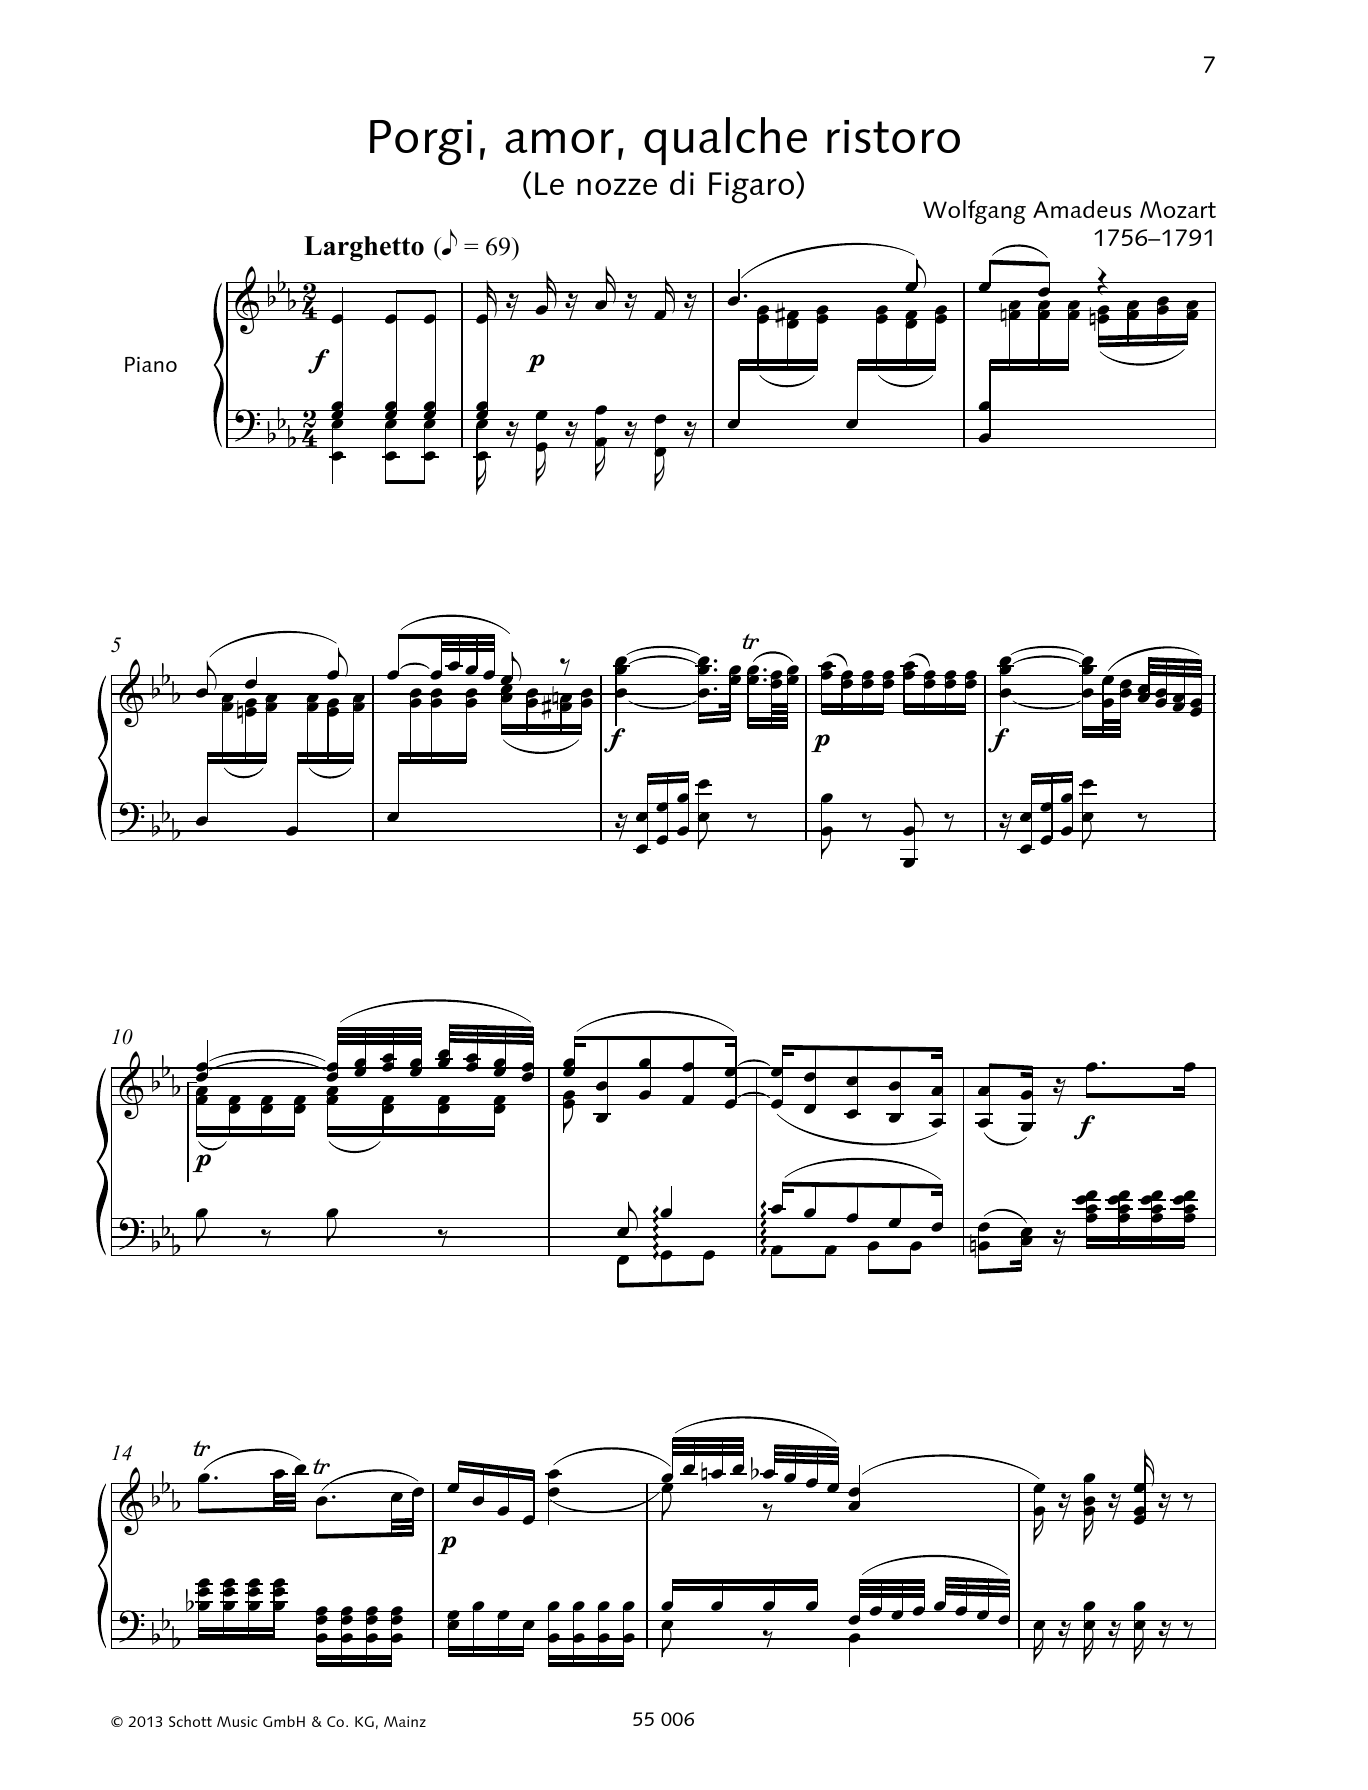 Francesca Licciarda Porgi, amor, qualche ristoro Sheet Music Notes & Chords for Piano & Vocal - Download or Print PDF